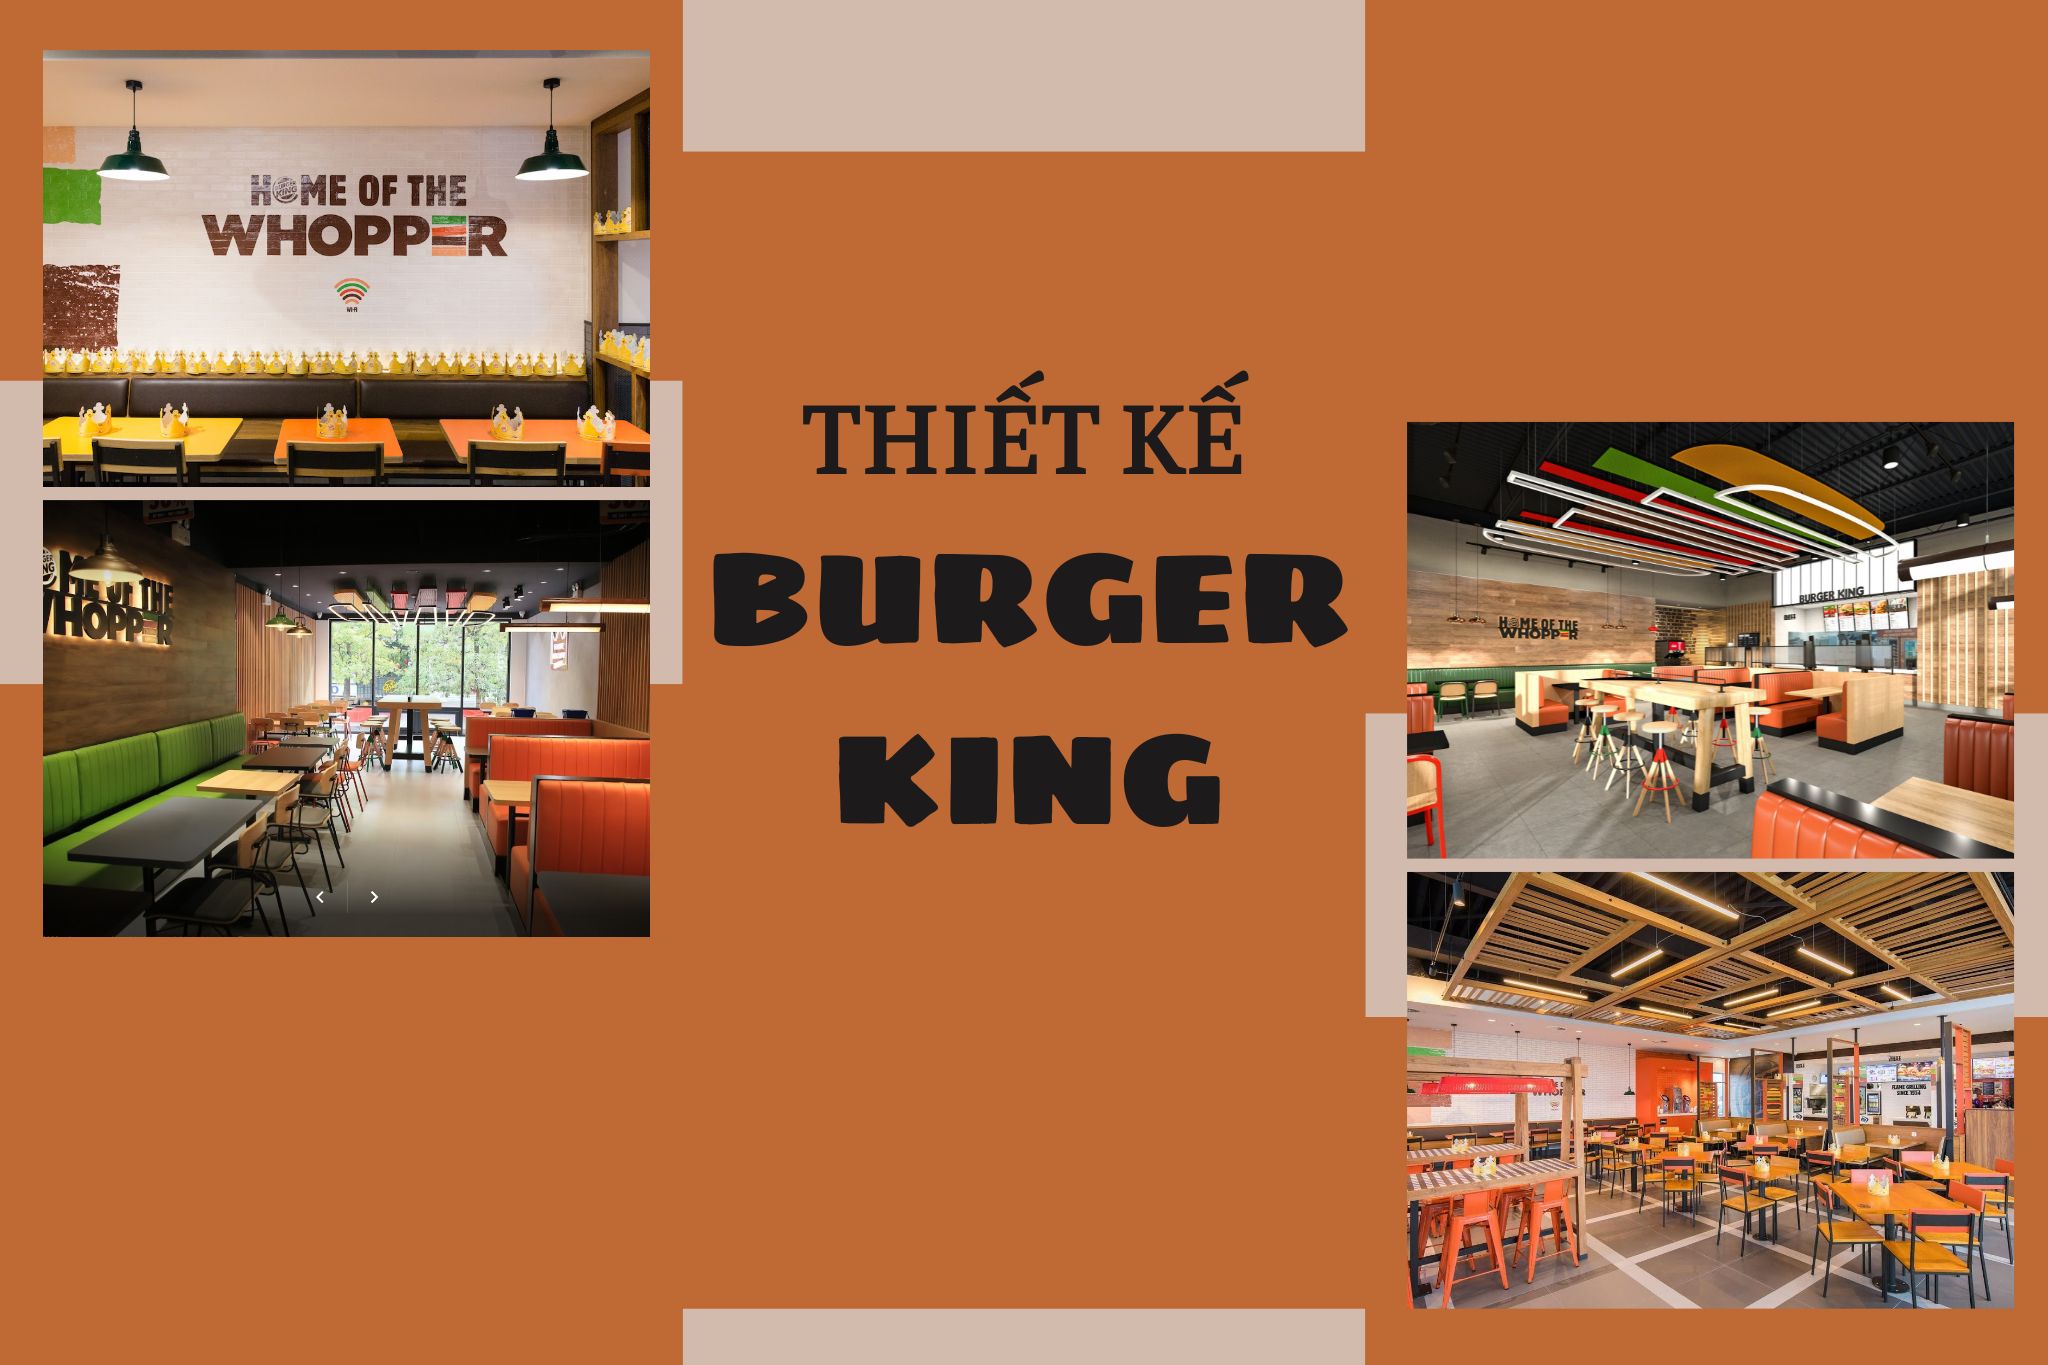 Thiết kế Burger King - Chuỗi cửa hàng hamburger lớn thứ hai tại Hoa Kỳ